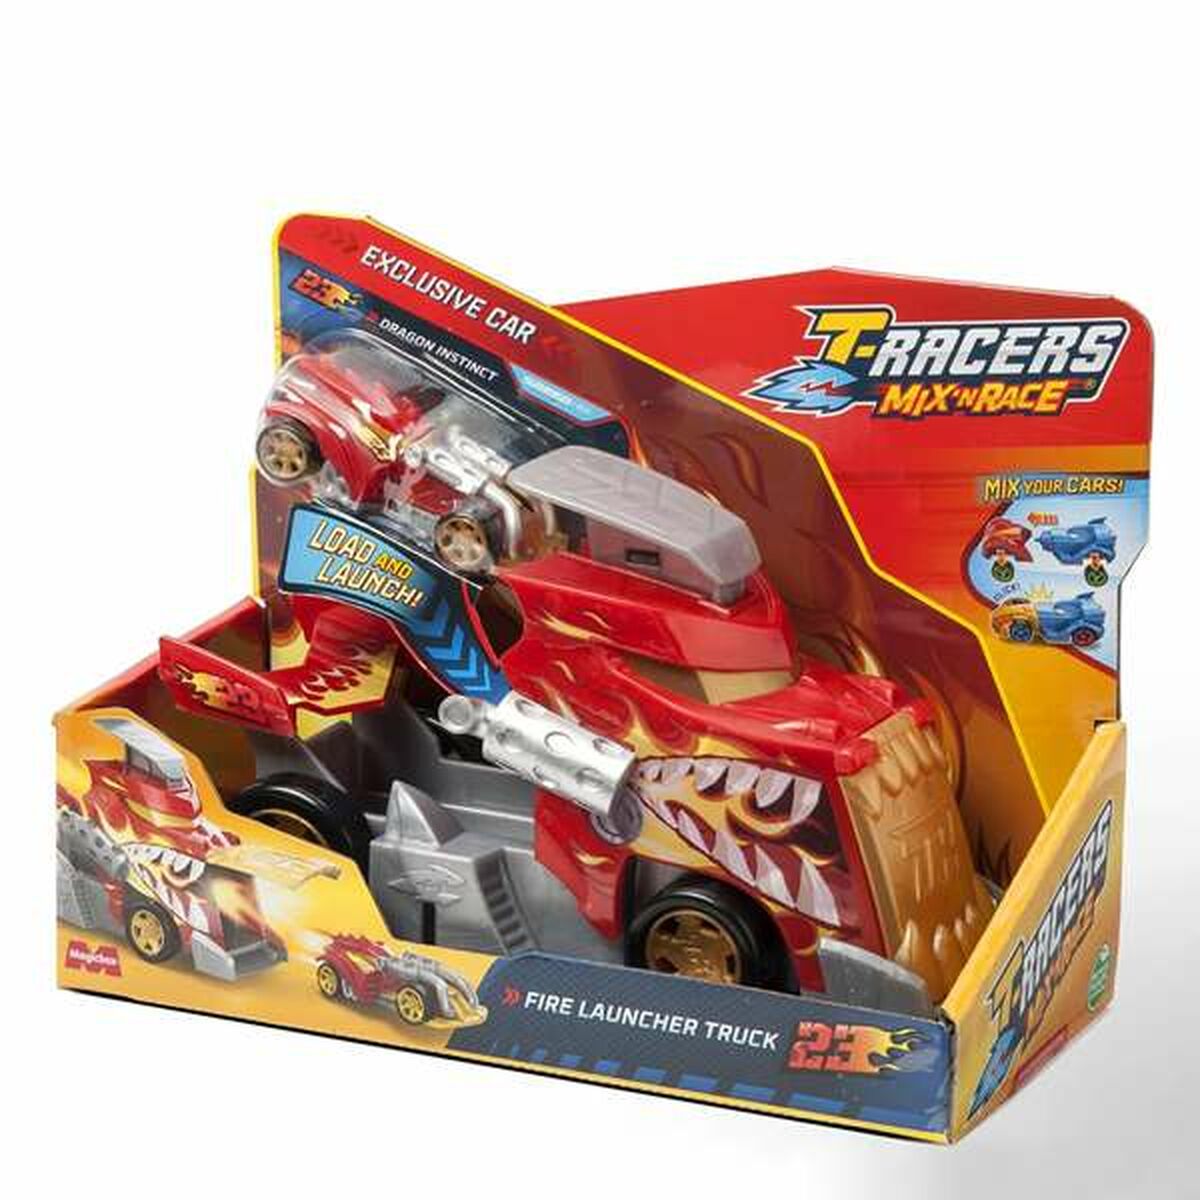 Launcher Magicbox Launcher Truck T-Racers Mix 'N Race 10 x 16,8 x 22,5 cm Car